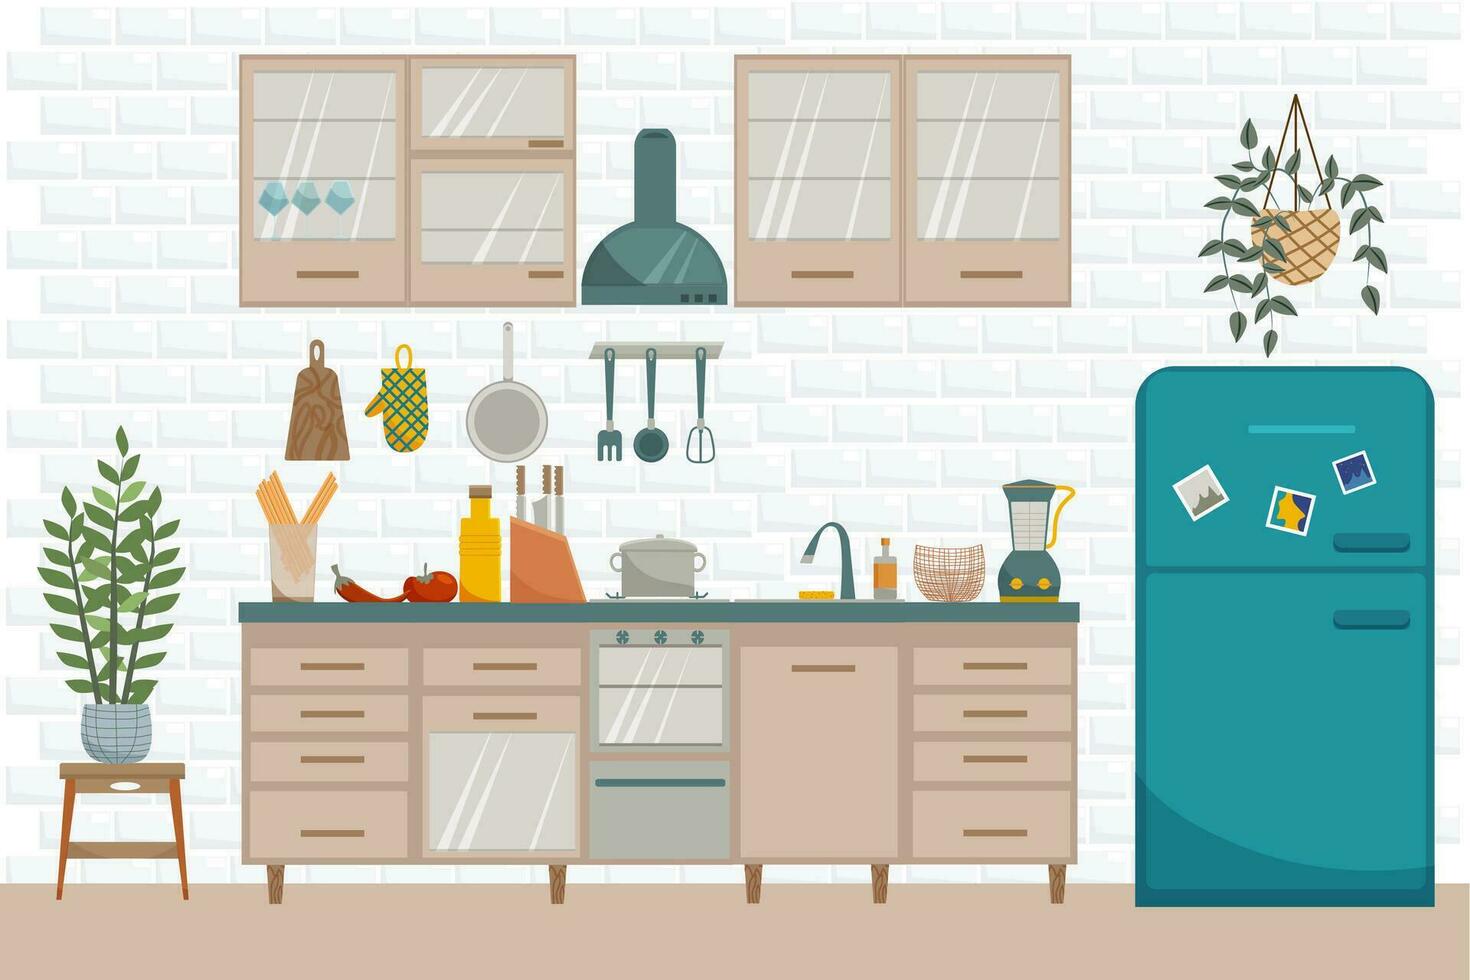 vecteur plat intérieur de cuisine. meubles tel comme poêle, armoire, vaisselle et frigo dans moderne style.